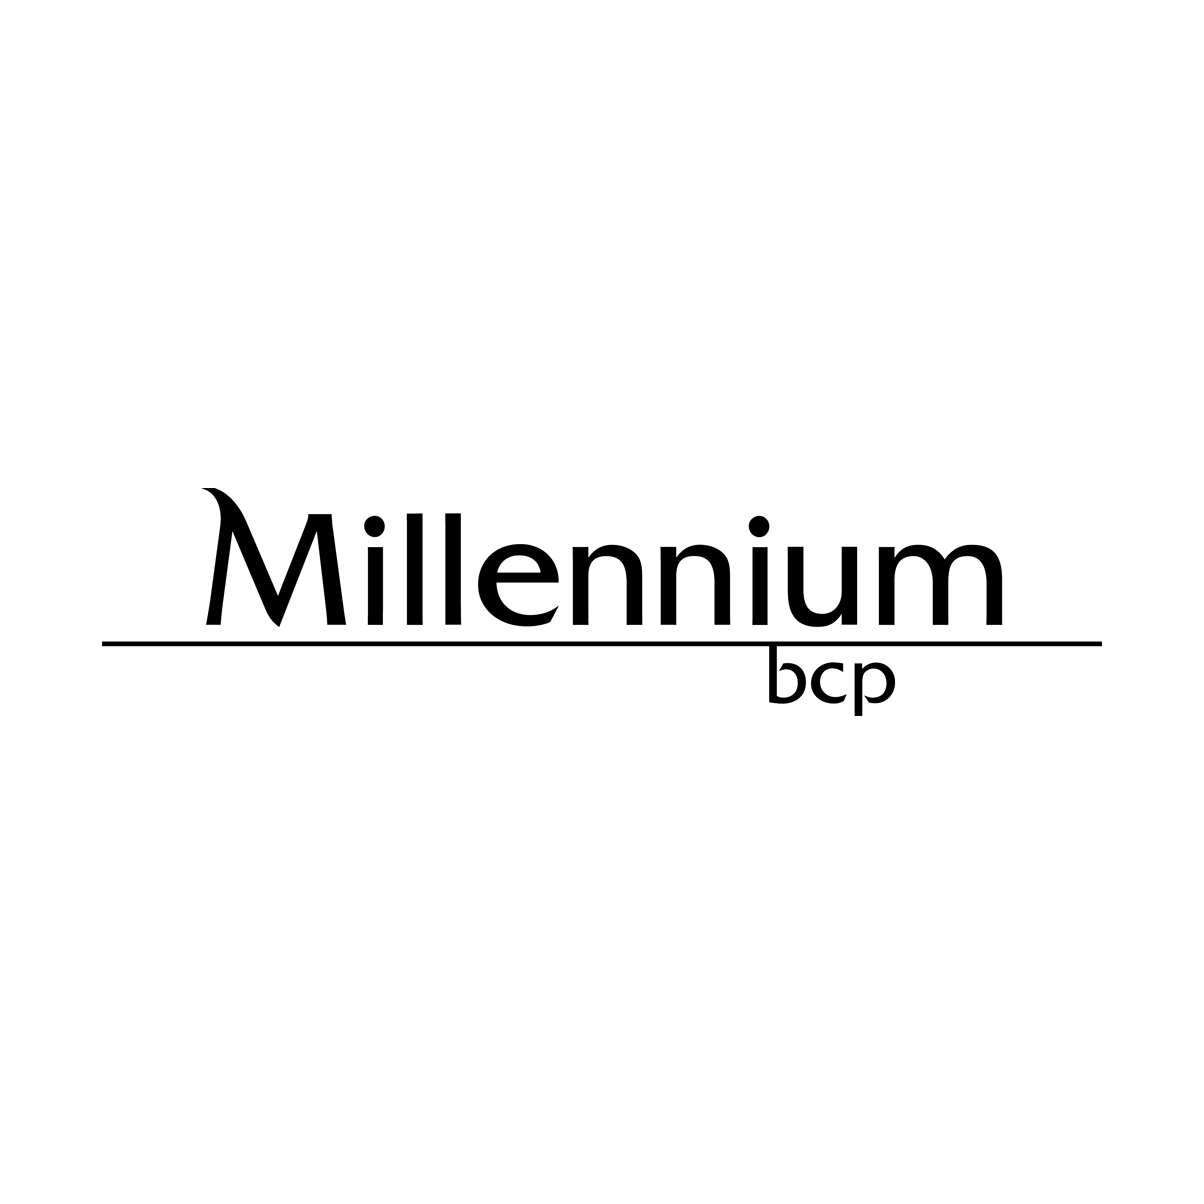 millennium bcp.png